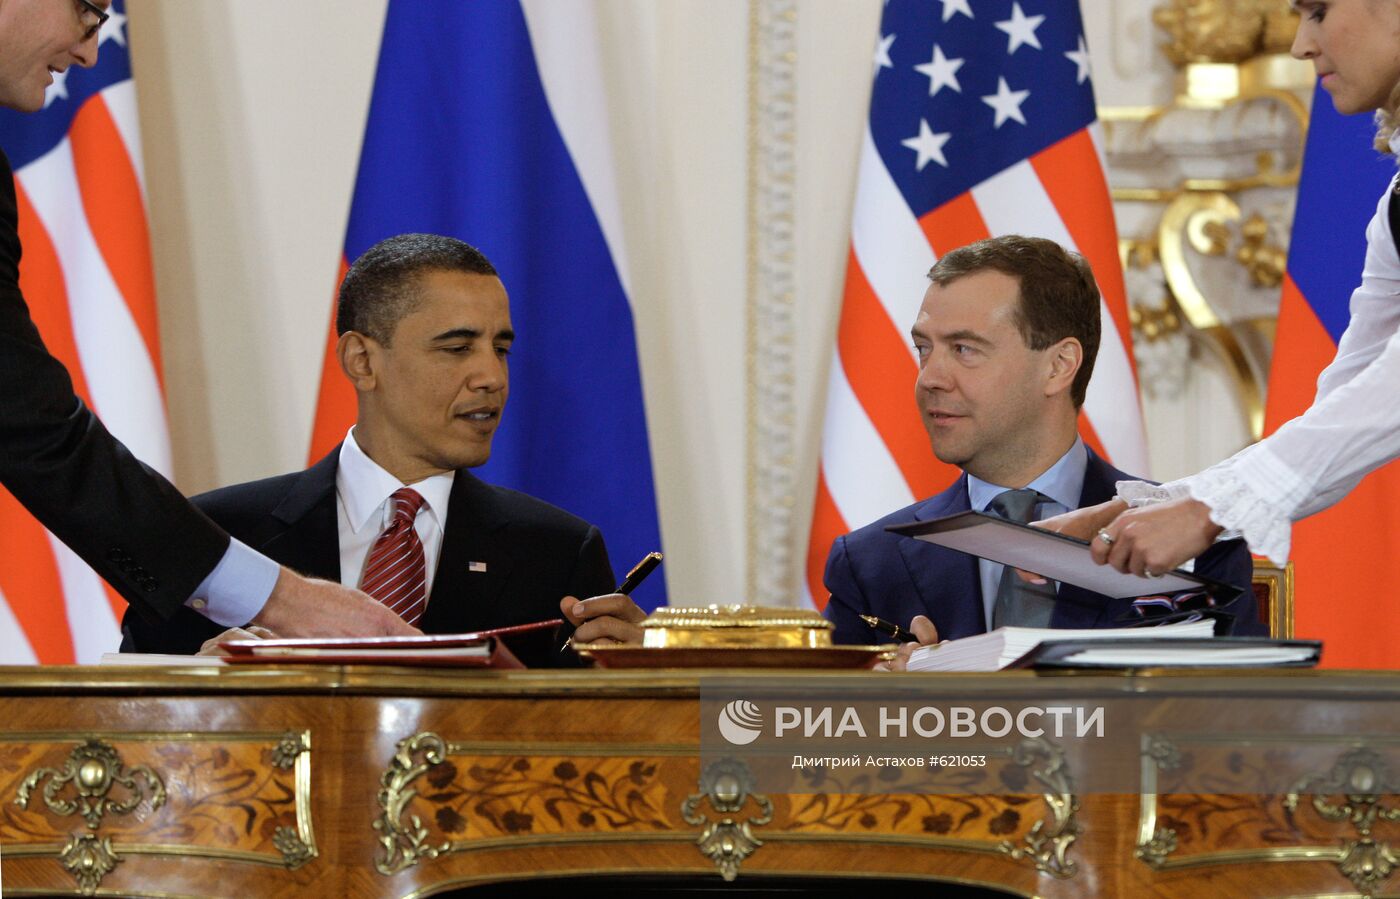 Прага подписание договора снв 3. Обама Медведев СНВ-3. СНВ-3 договор между Россией и США. Обама и Медведев СНВ подписание.